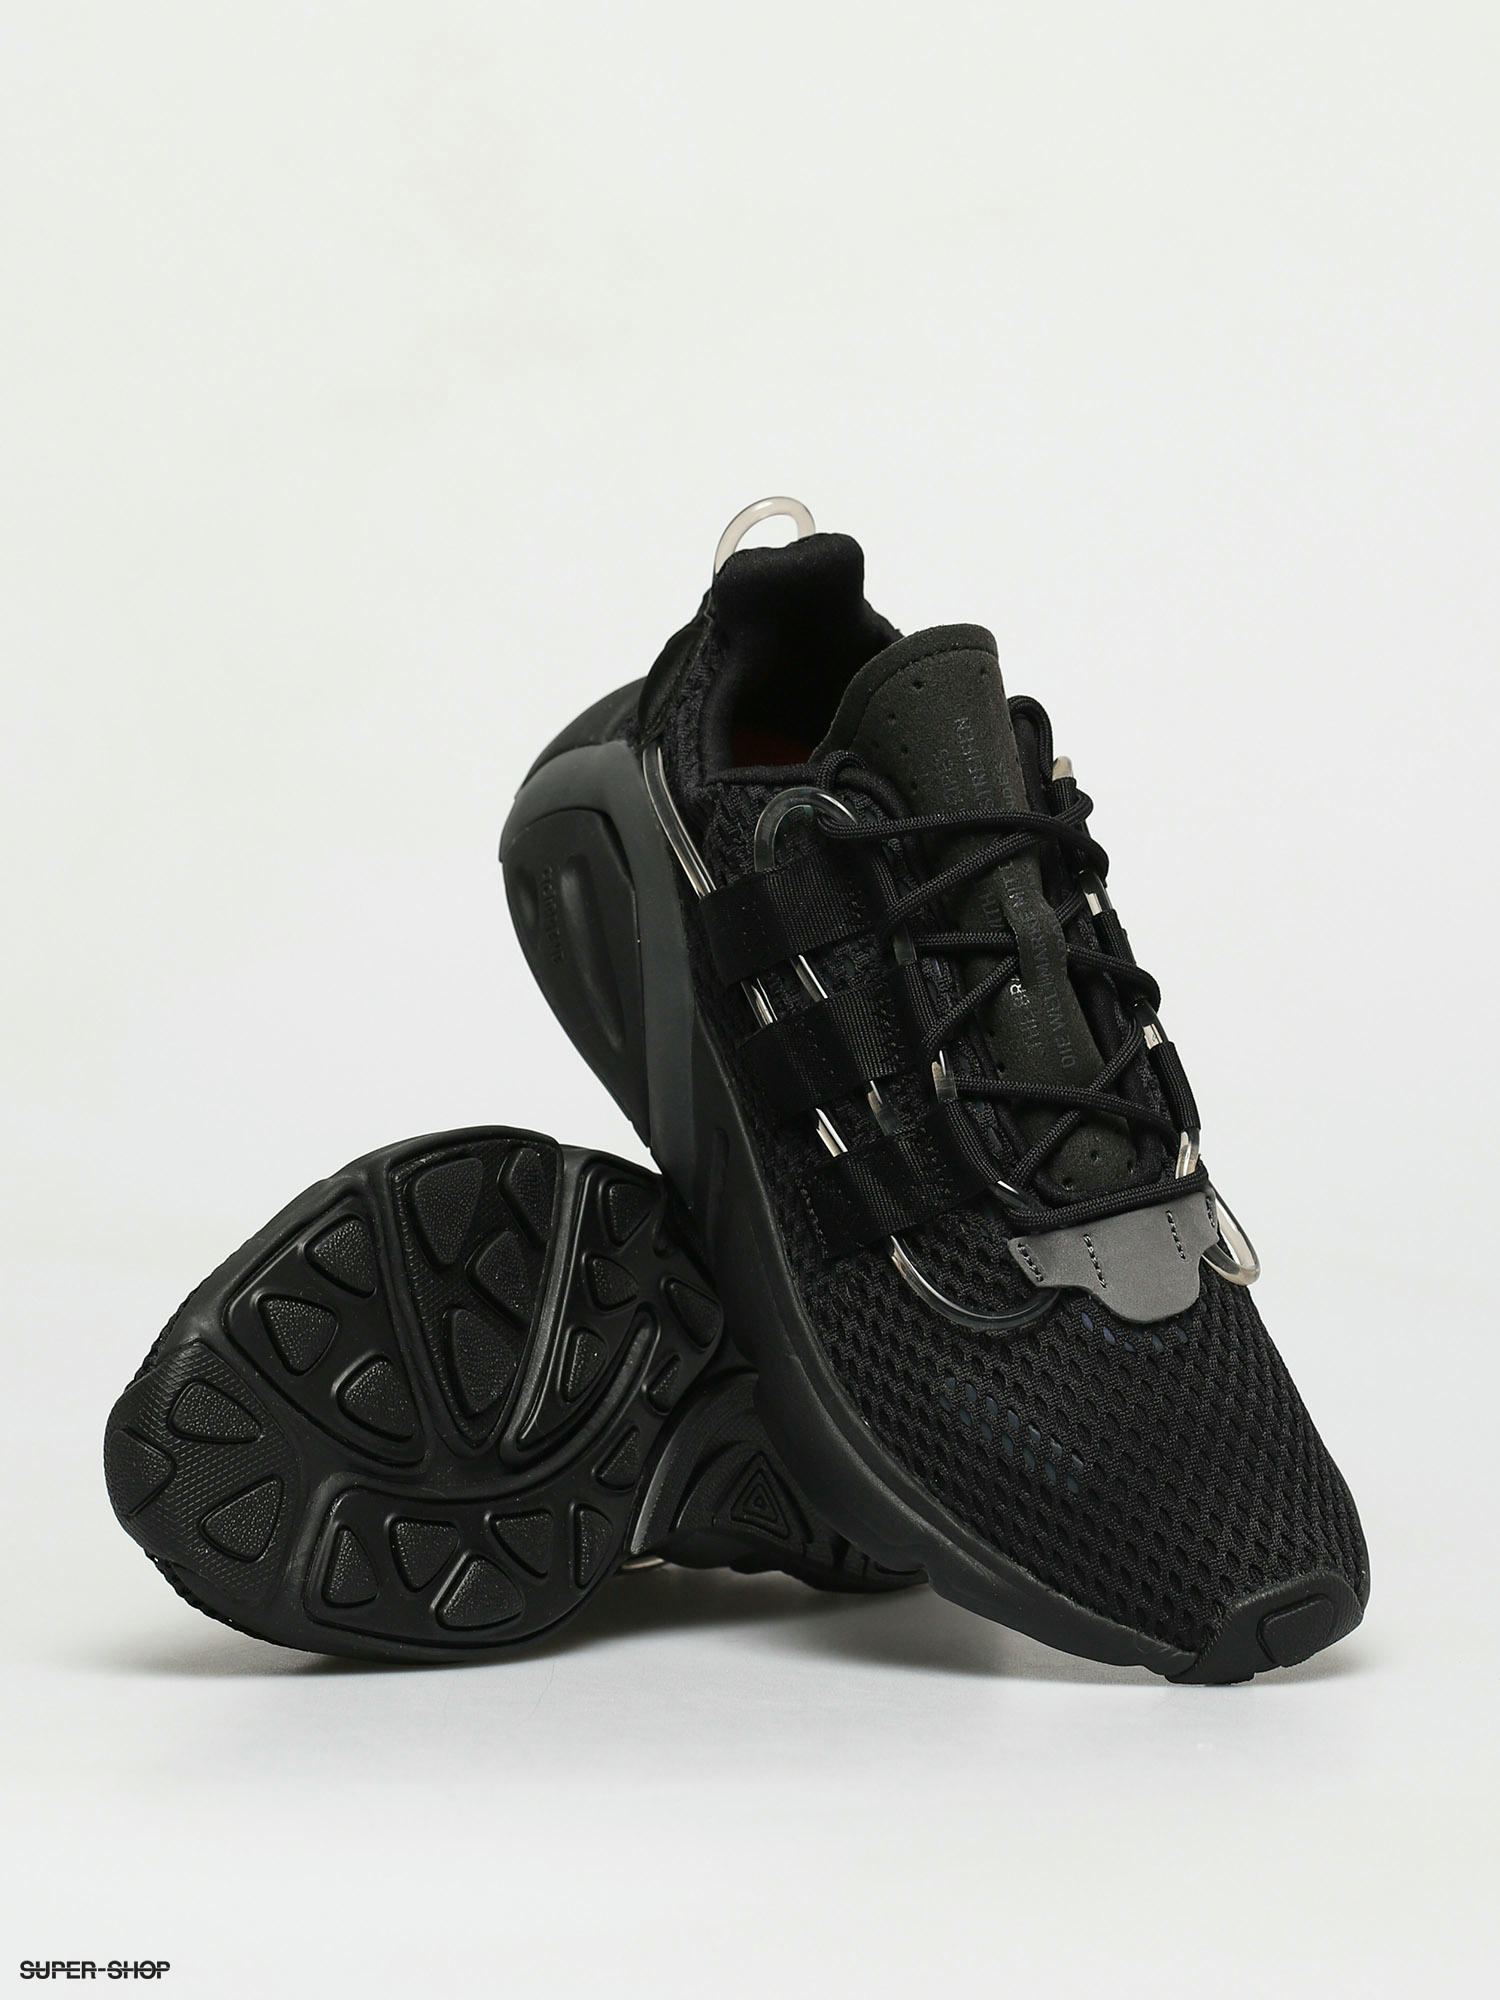 Originals Shoes (core black/core black/grey six)